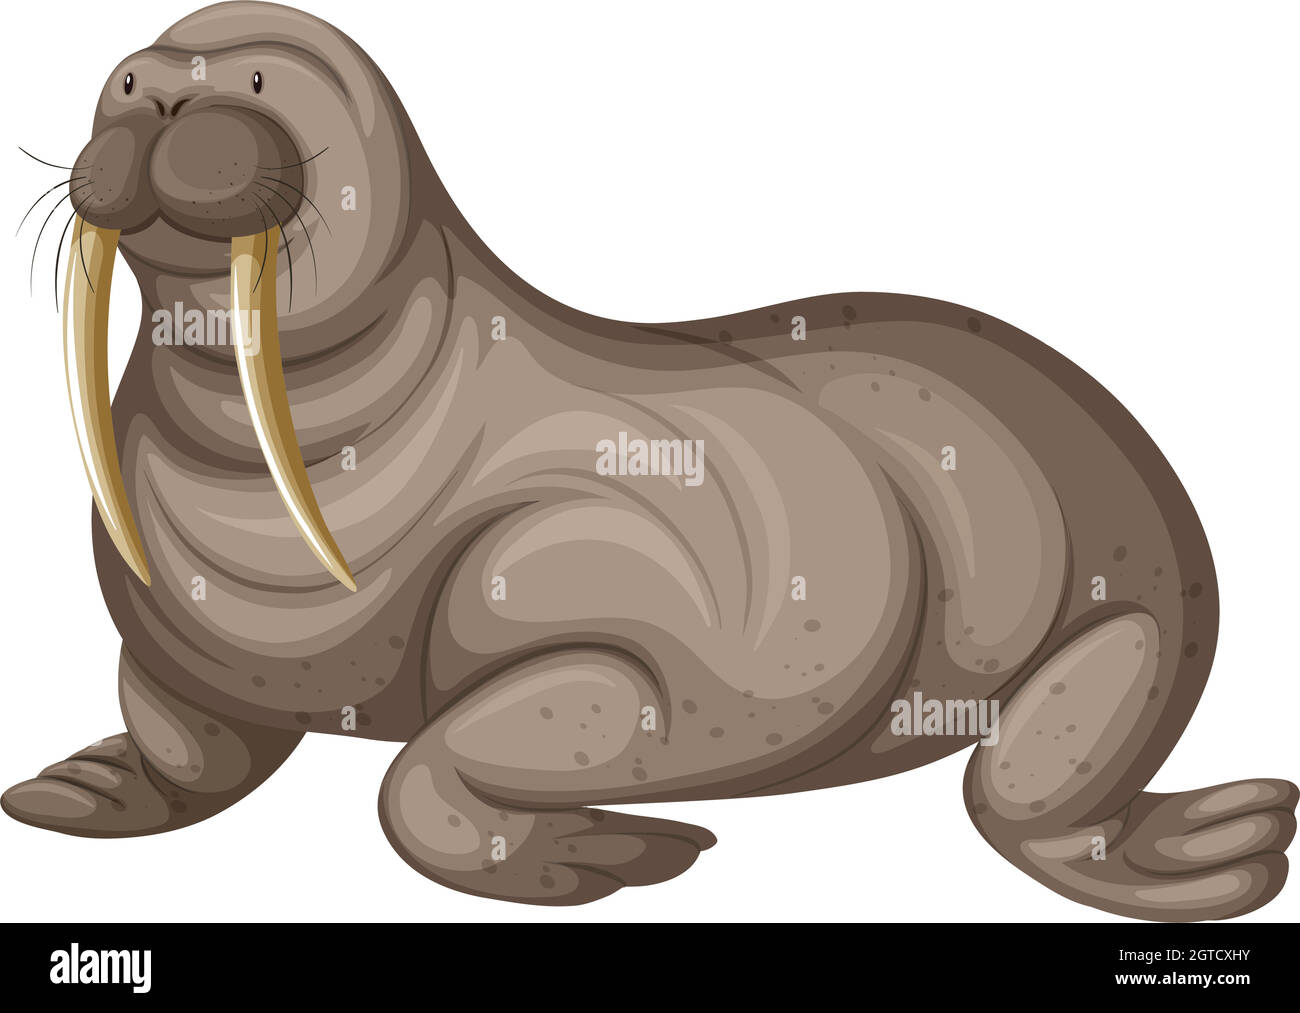 Walrus with sharp teeth Stock Vector